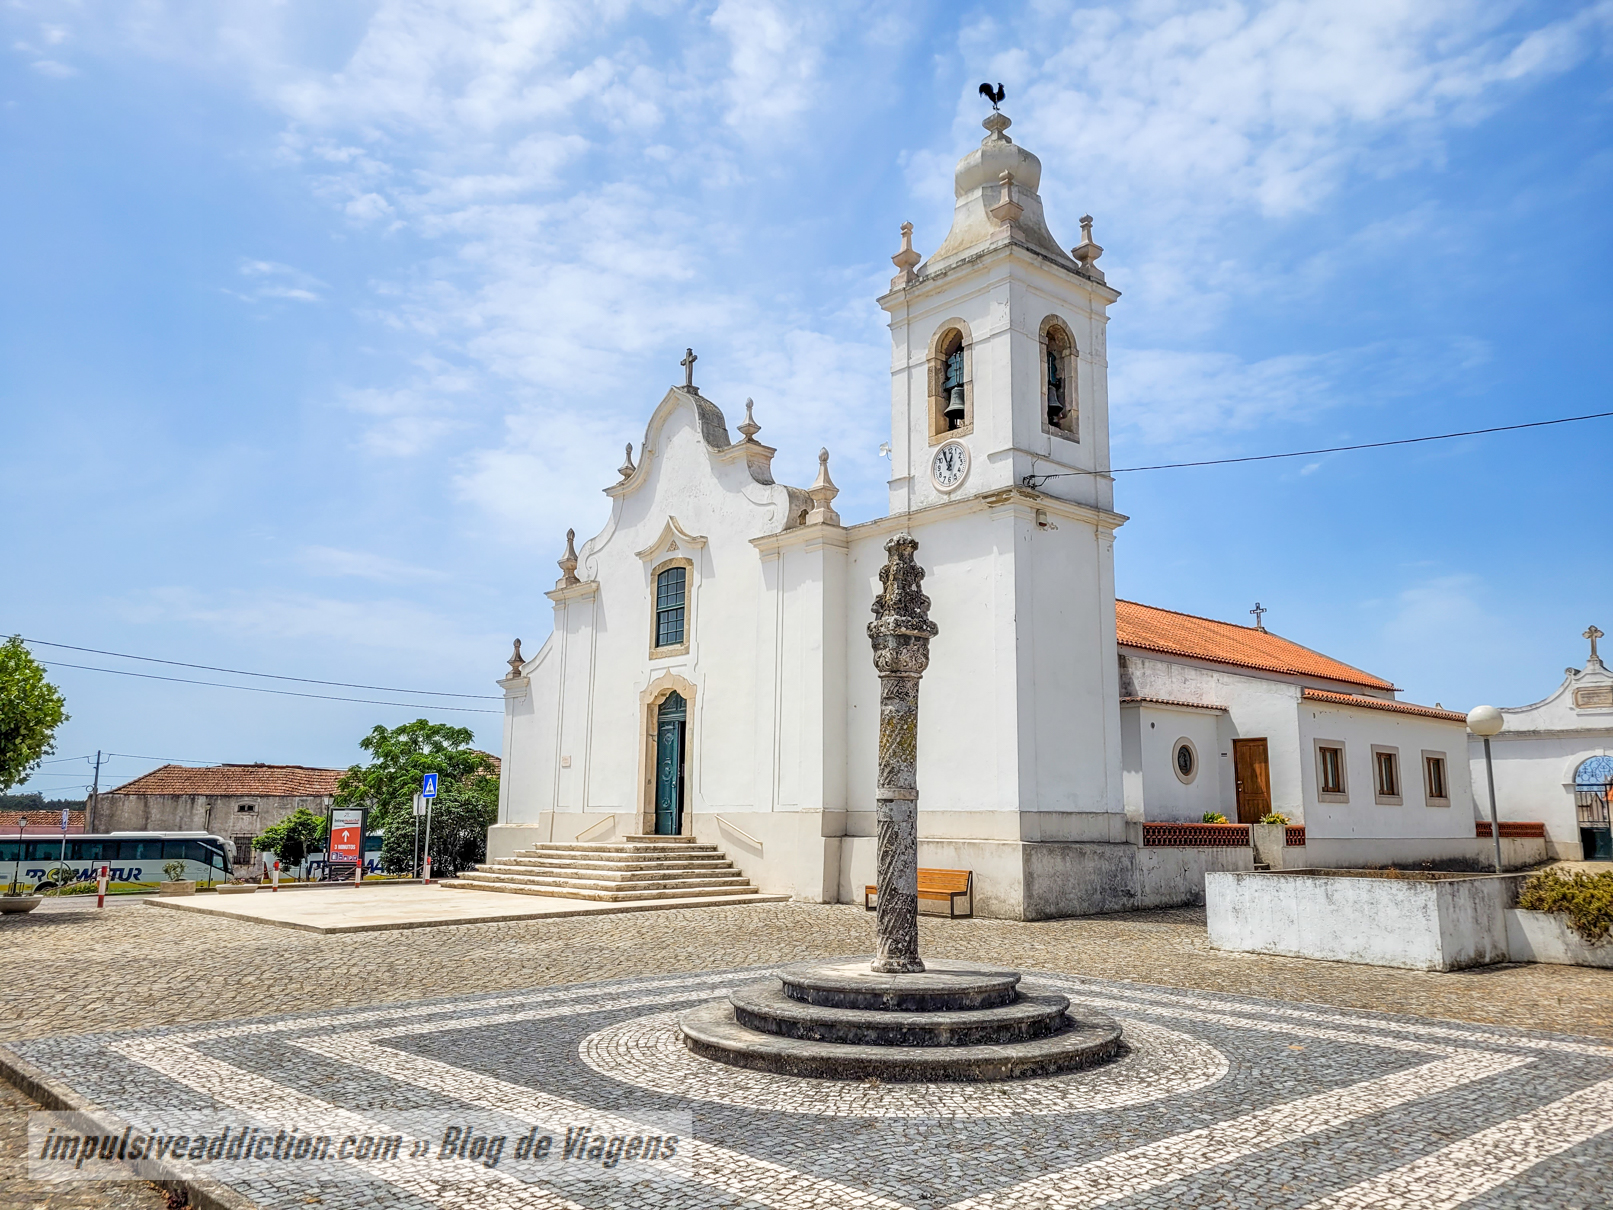 Mother Church of Alfeizerão and Pillory